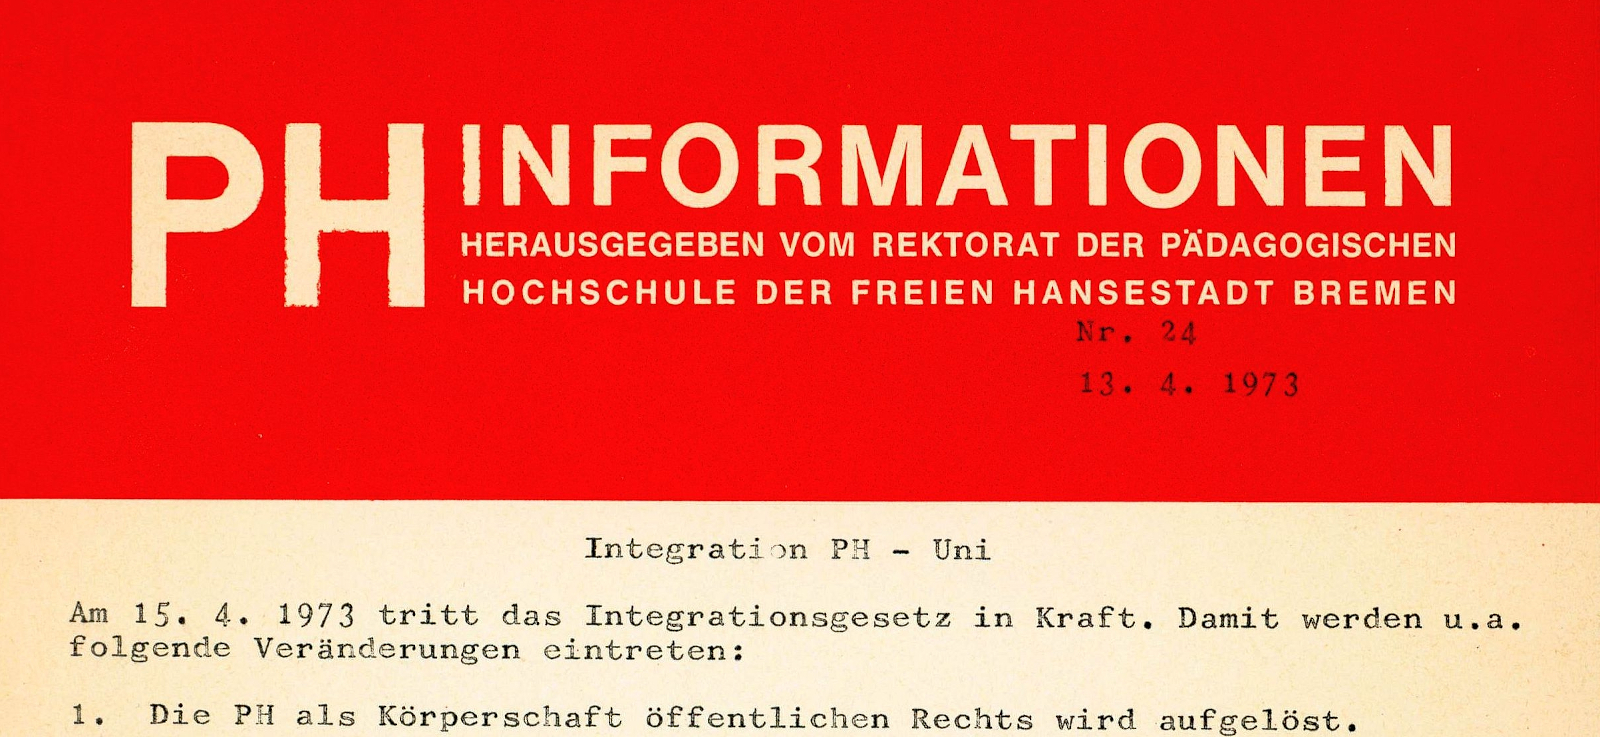 Oberer Ausschnitt des Informationsblatts der Pädagogischen Hochschule vom 13. April 1973.